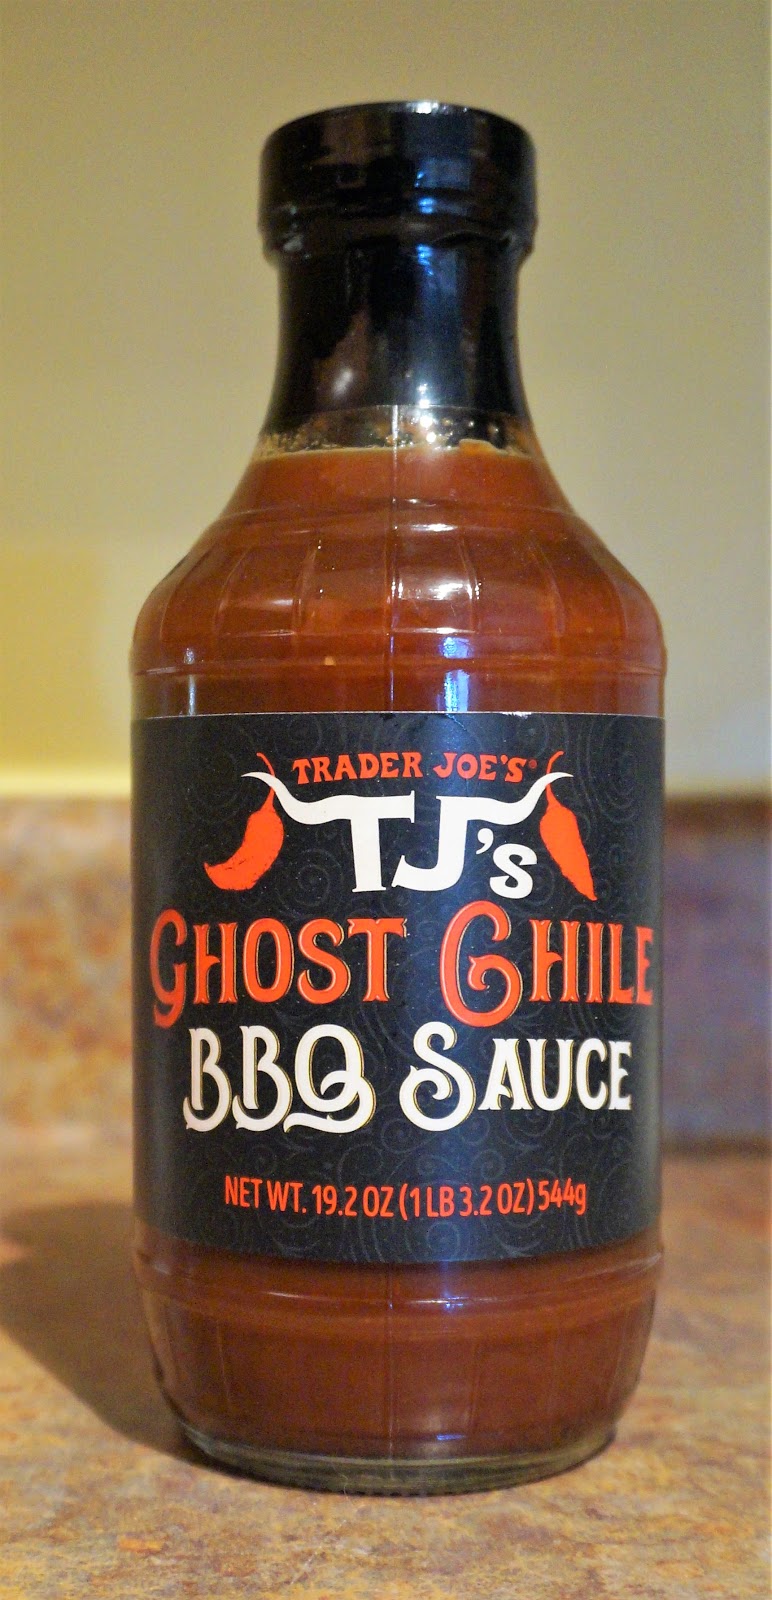 Exploring Trader Joe's: Trader Joe's Ghost Chile BBQ Sauce